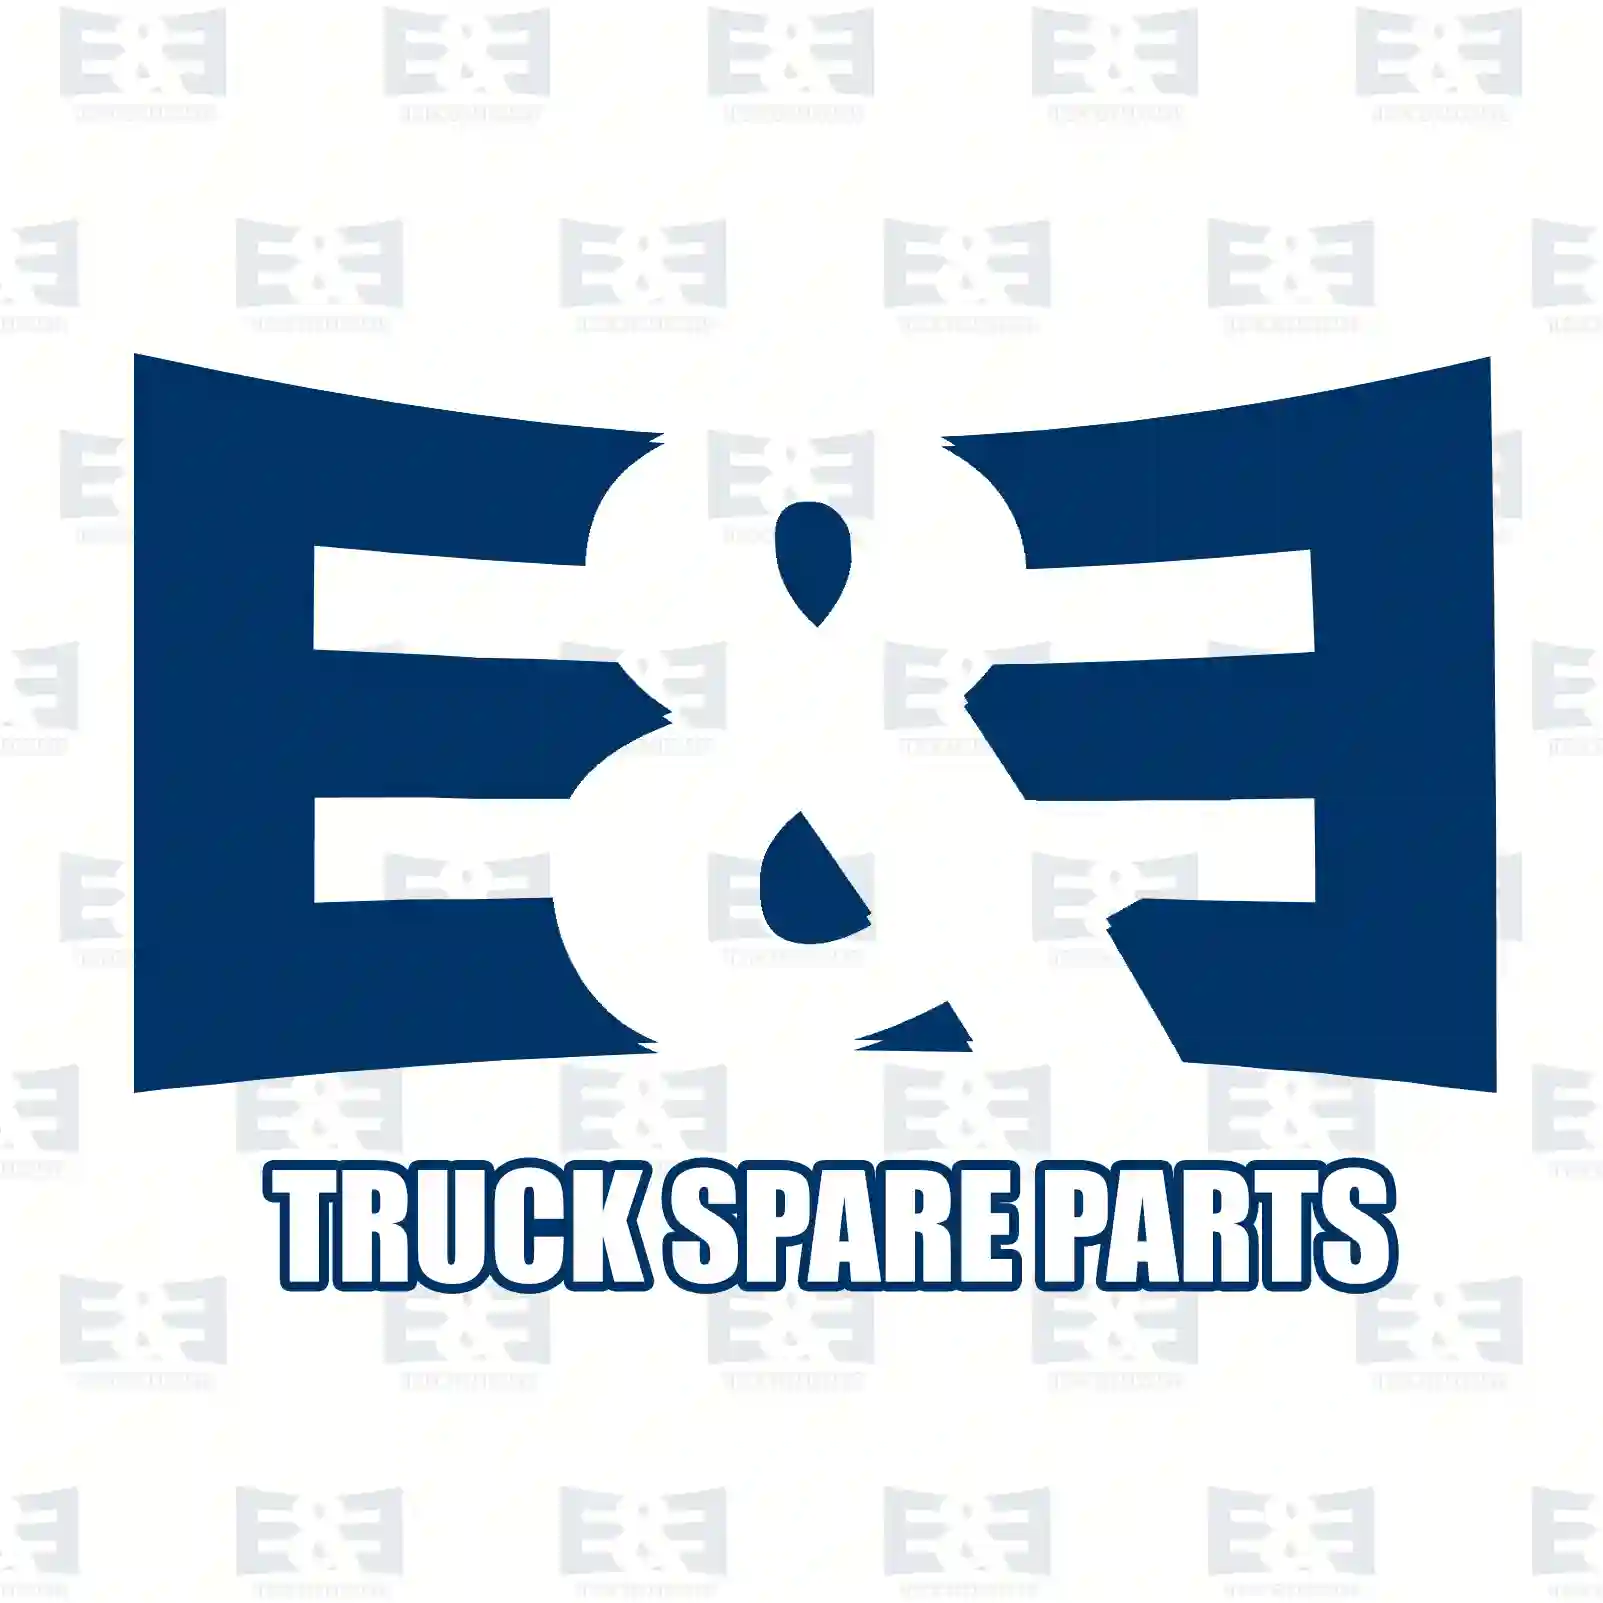 O-ring, 2E2284952, 7403986189, 3986189, ZG02901-0008, ||  2E2284952 E&E Truck Spare Parts | Truck Spare Parts, Auotomotive Spare Parts O-ring, 2E2284952, 7403986189, 3986189, ZG02901-0008, ||  2E2284952 E&E Truck Spare Parts | Truck Spare Parts, Auotomotive Spare Parts